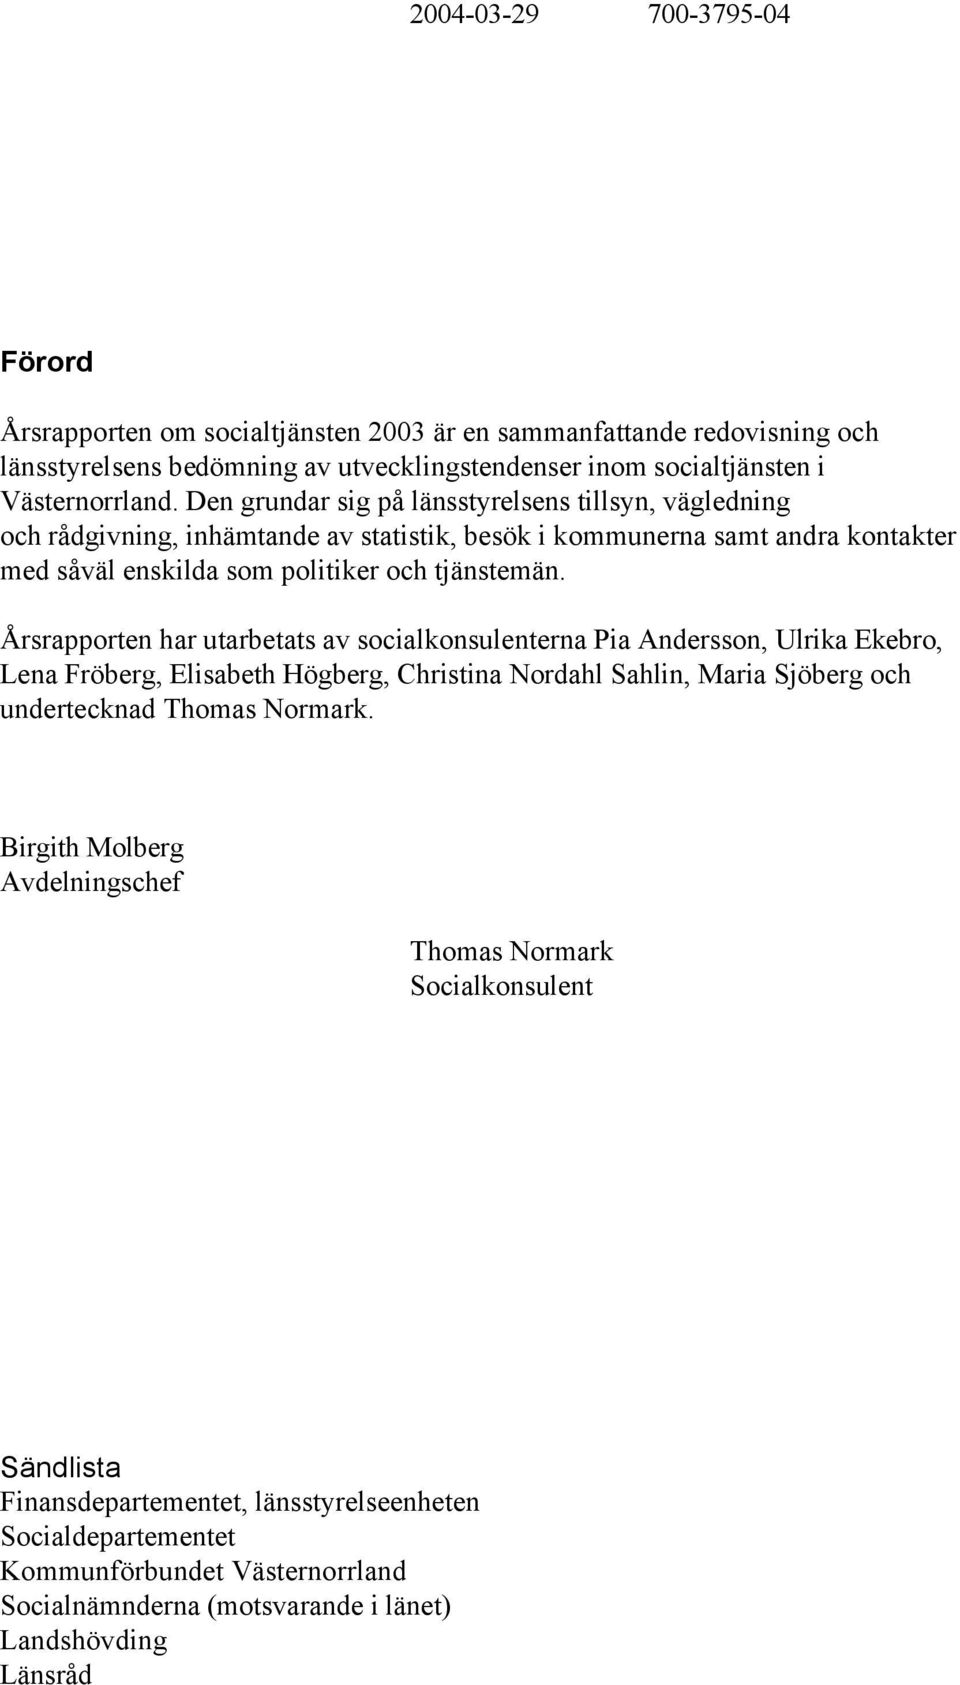 Årsrapporten har utarbetats av socialkonsulenterna Pia Andersson, Ulrika Ekebro, Lena Fröberg, Elisabeth Högberg, Christina Nordahl Sahlin, Maria Sjöberg och undertecknad Thomas Normark.